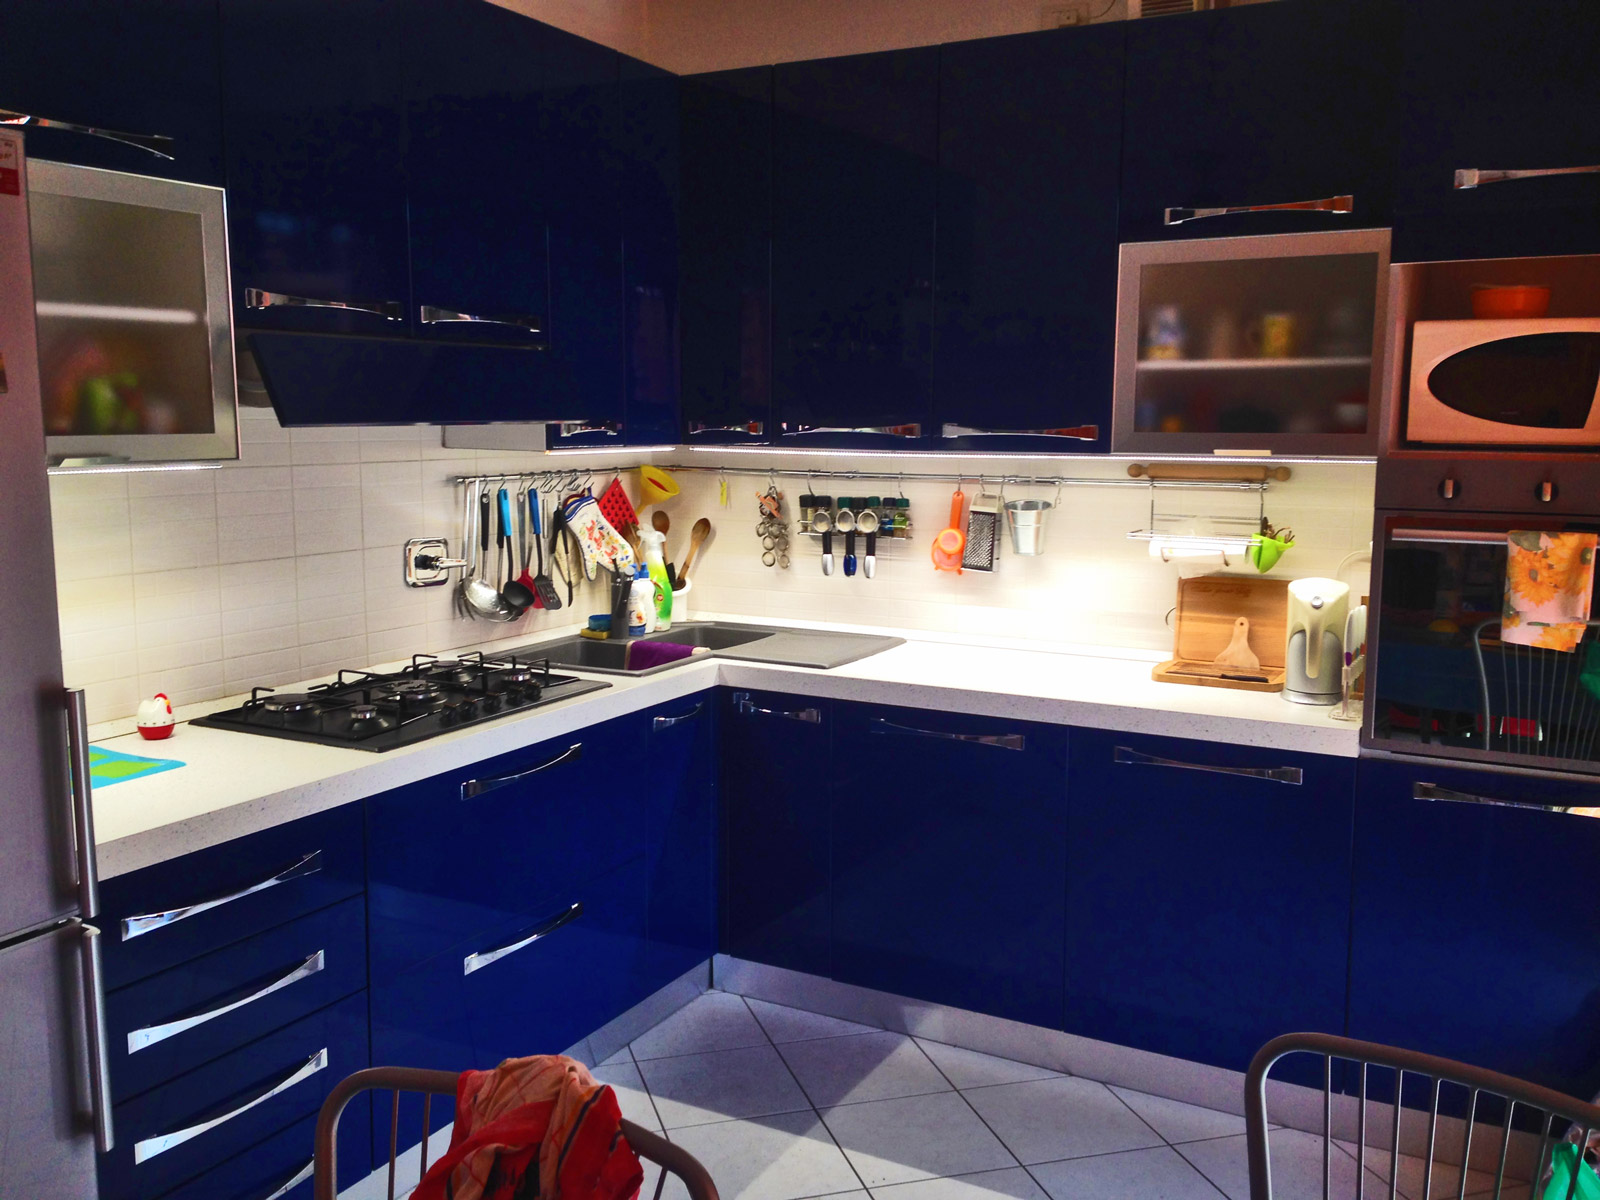 Dettagli Illuminazione con strisce a led di una cucina in un abitazione a Volvera (TO)